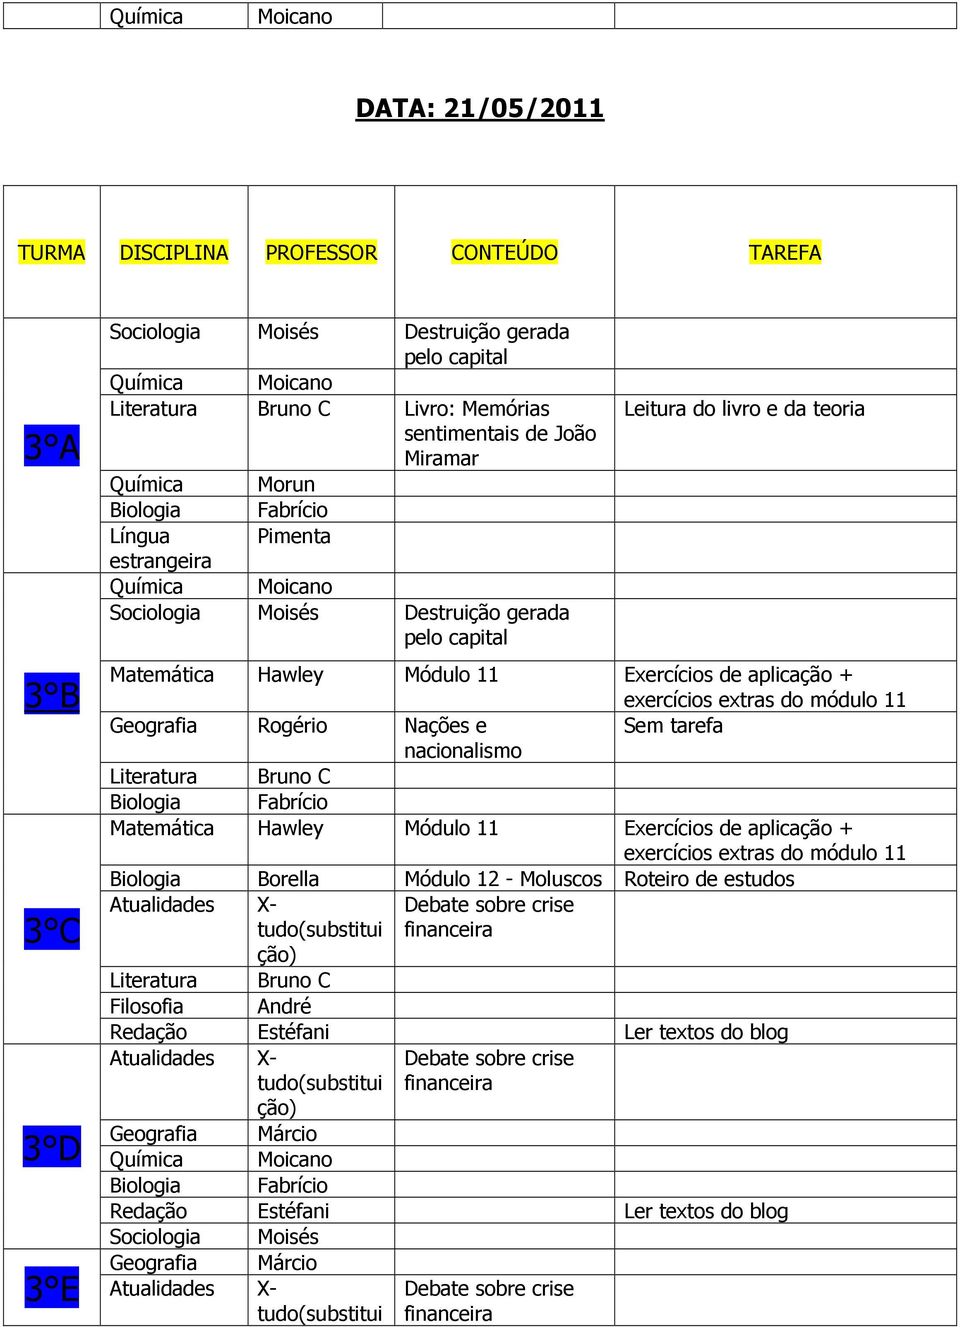 Hawley Módulo 11 Exercícios de aplicação + exercícios extras do módulo 11 Biologia Borella Módulo 12 - Moluscos Roteiro de estudos Atualidades X- Debate sobre crise